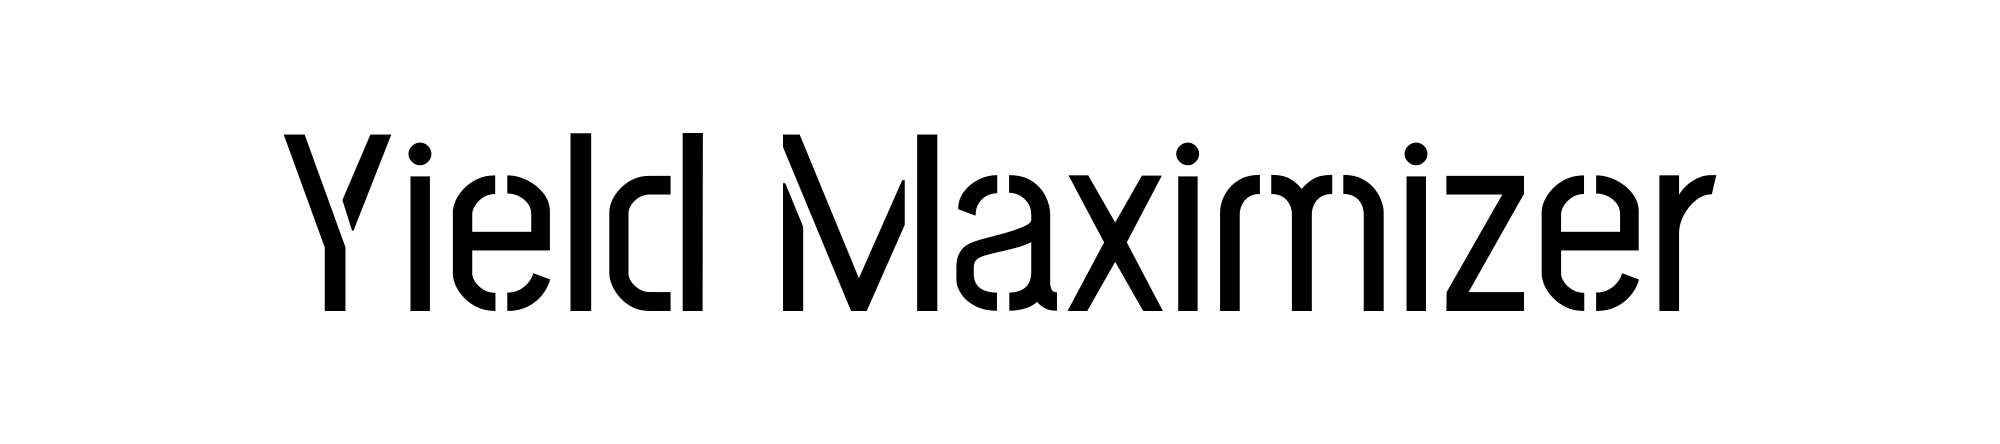 Yield Maximizer - Powering Publishers with Profitable Partnerships